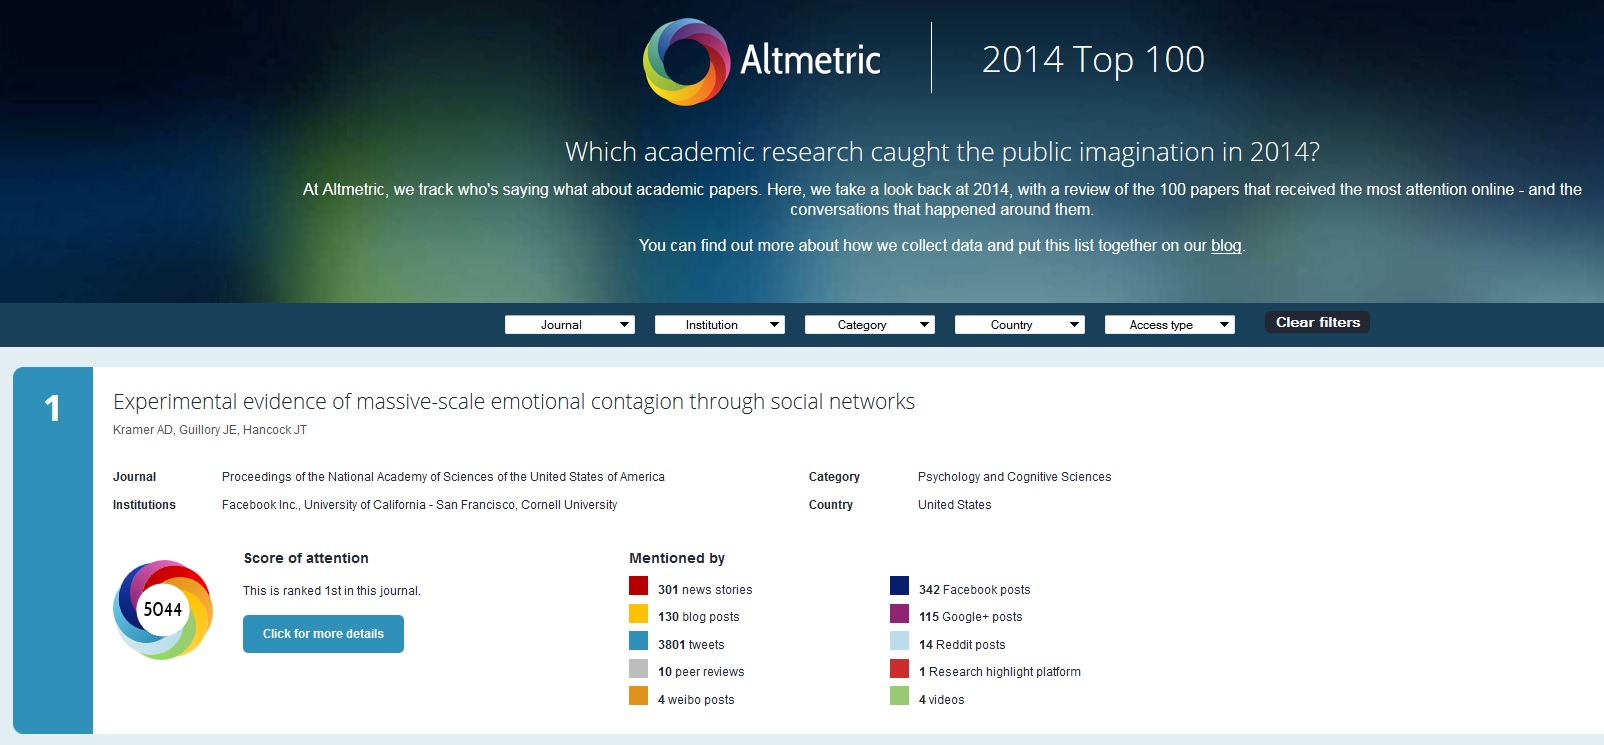 Altmetric Top 100 2014